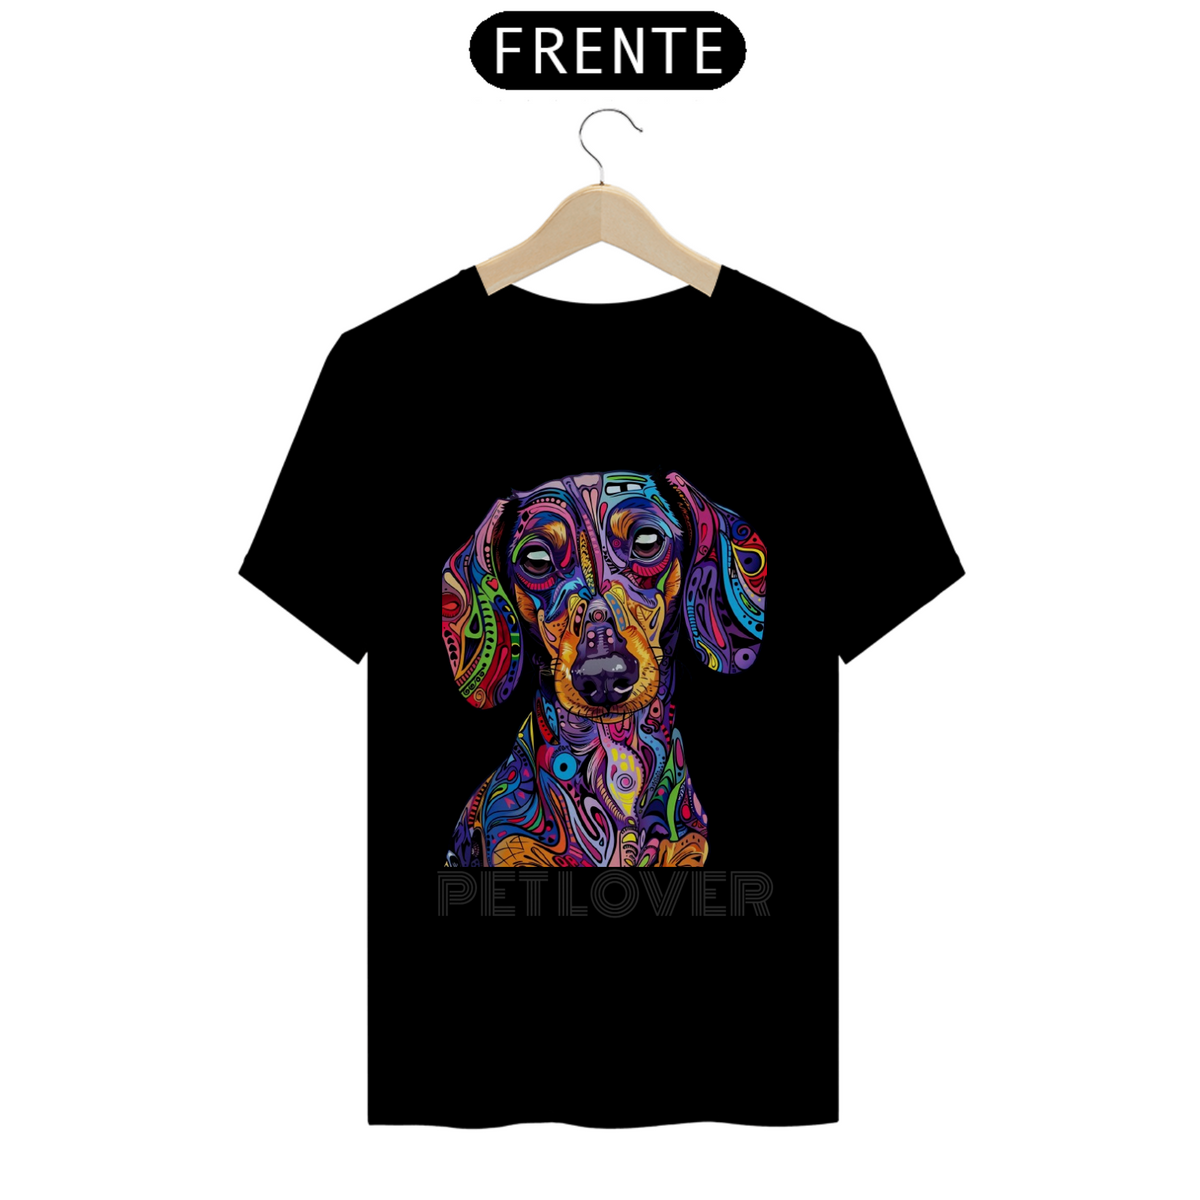 Nome do produto: Camiseta Prime Pet Lover Dog